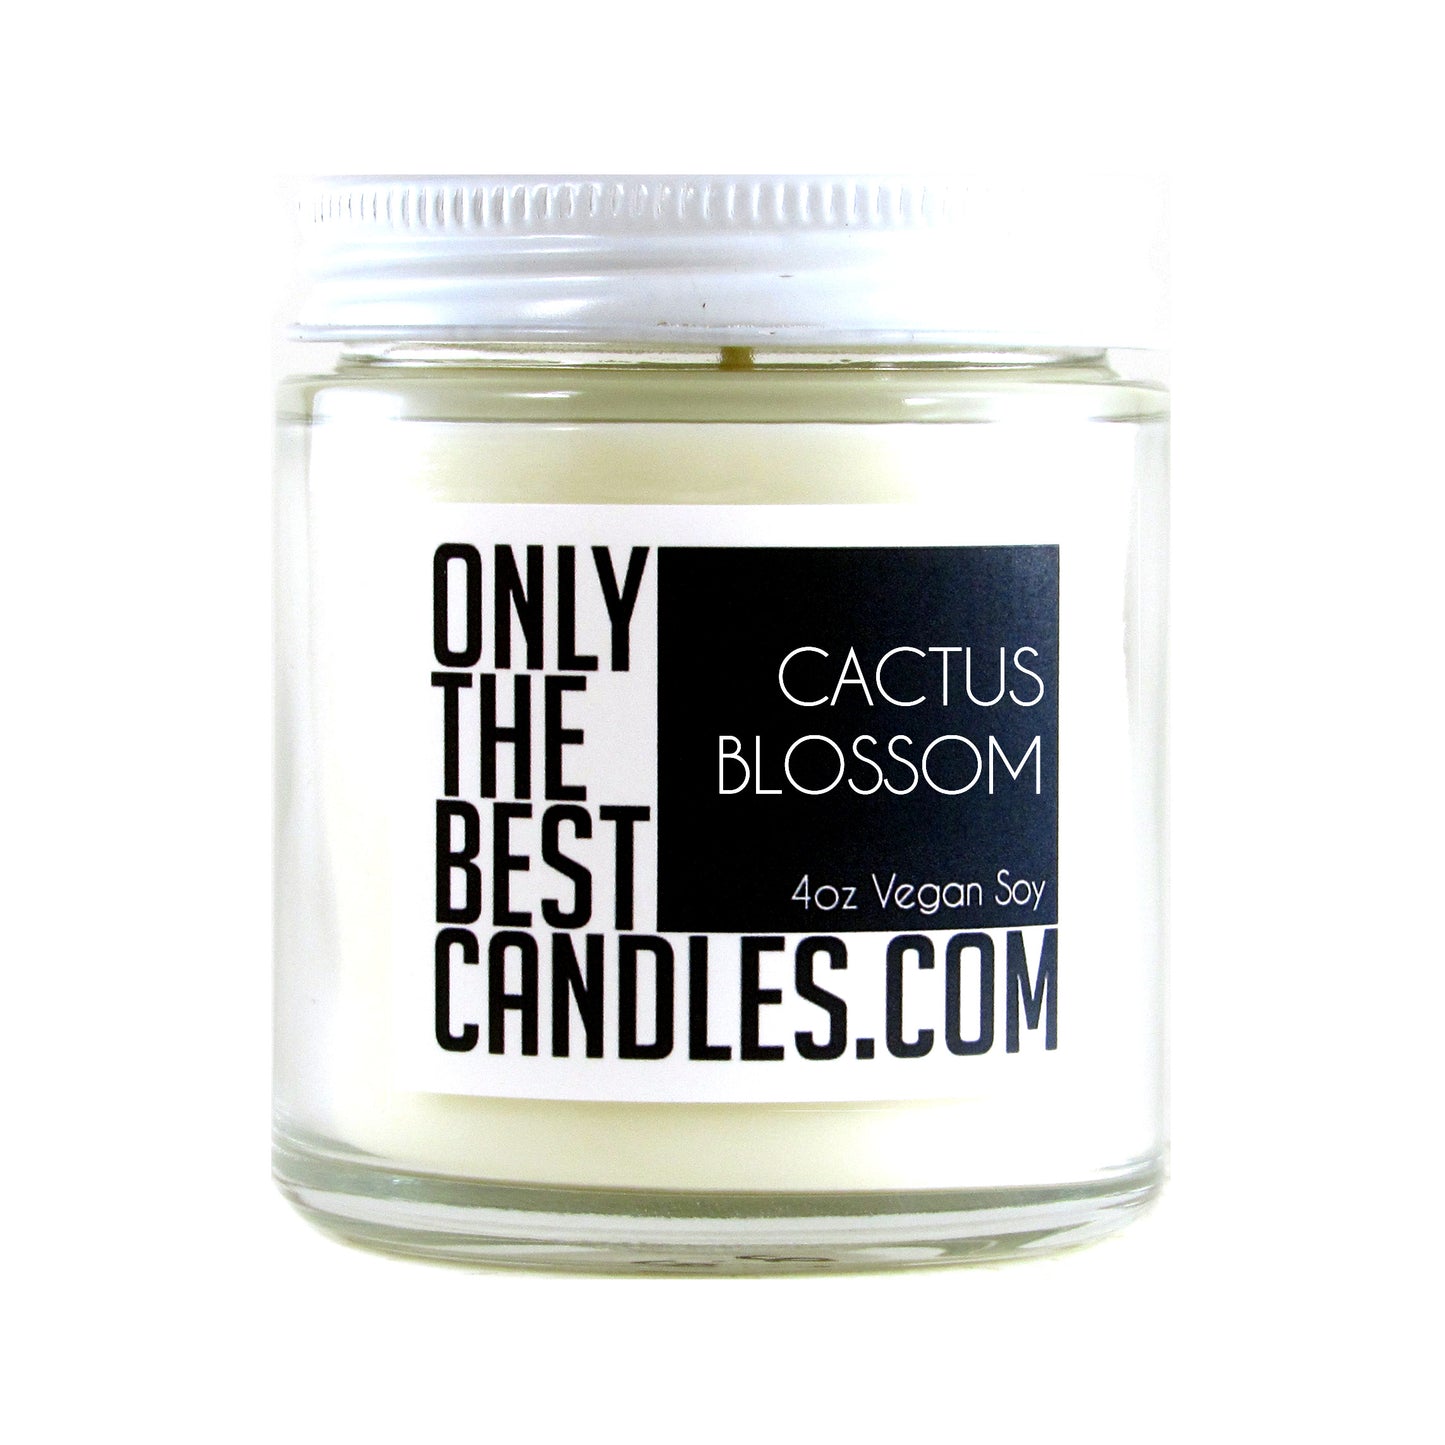 Cactus Blossom 4oz Candle